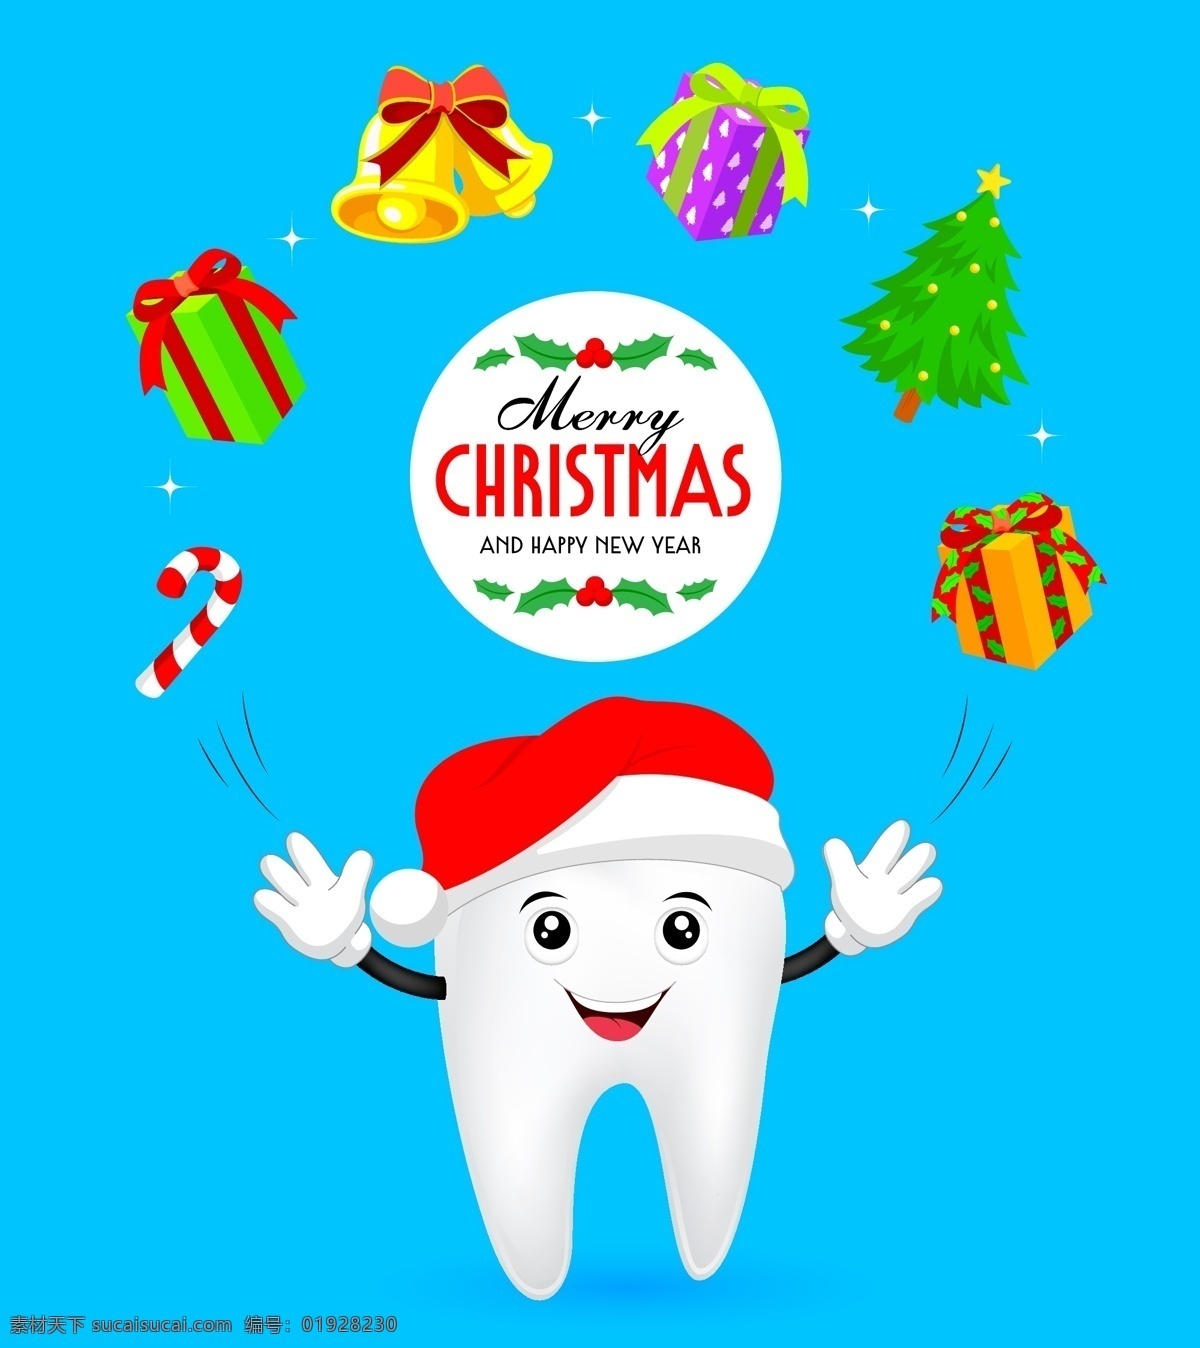 卡通牙齿矢量 牙齿 卡通牙齿 戴帽子的牙齿 礼物 圣诞树 拐棍糖 圣诞铃铛 麋鹿 文化艺术 节日庆祝